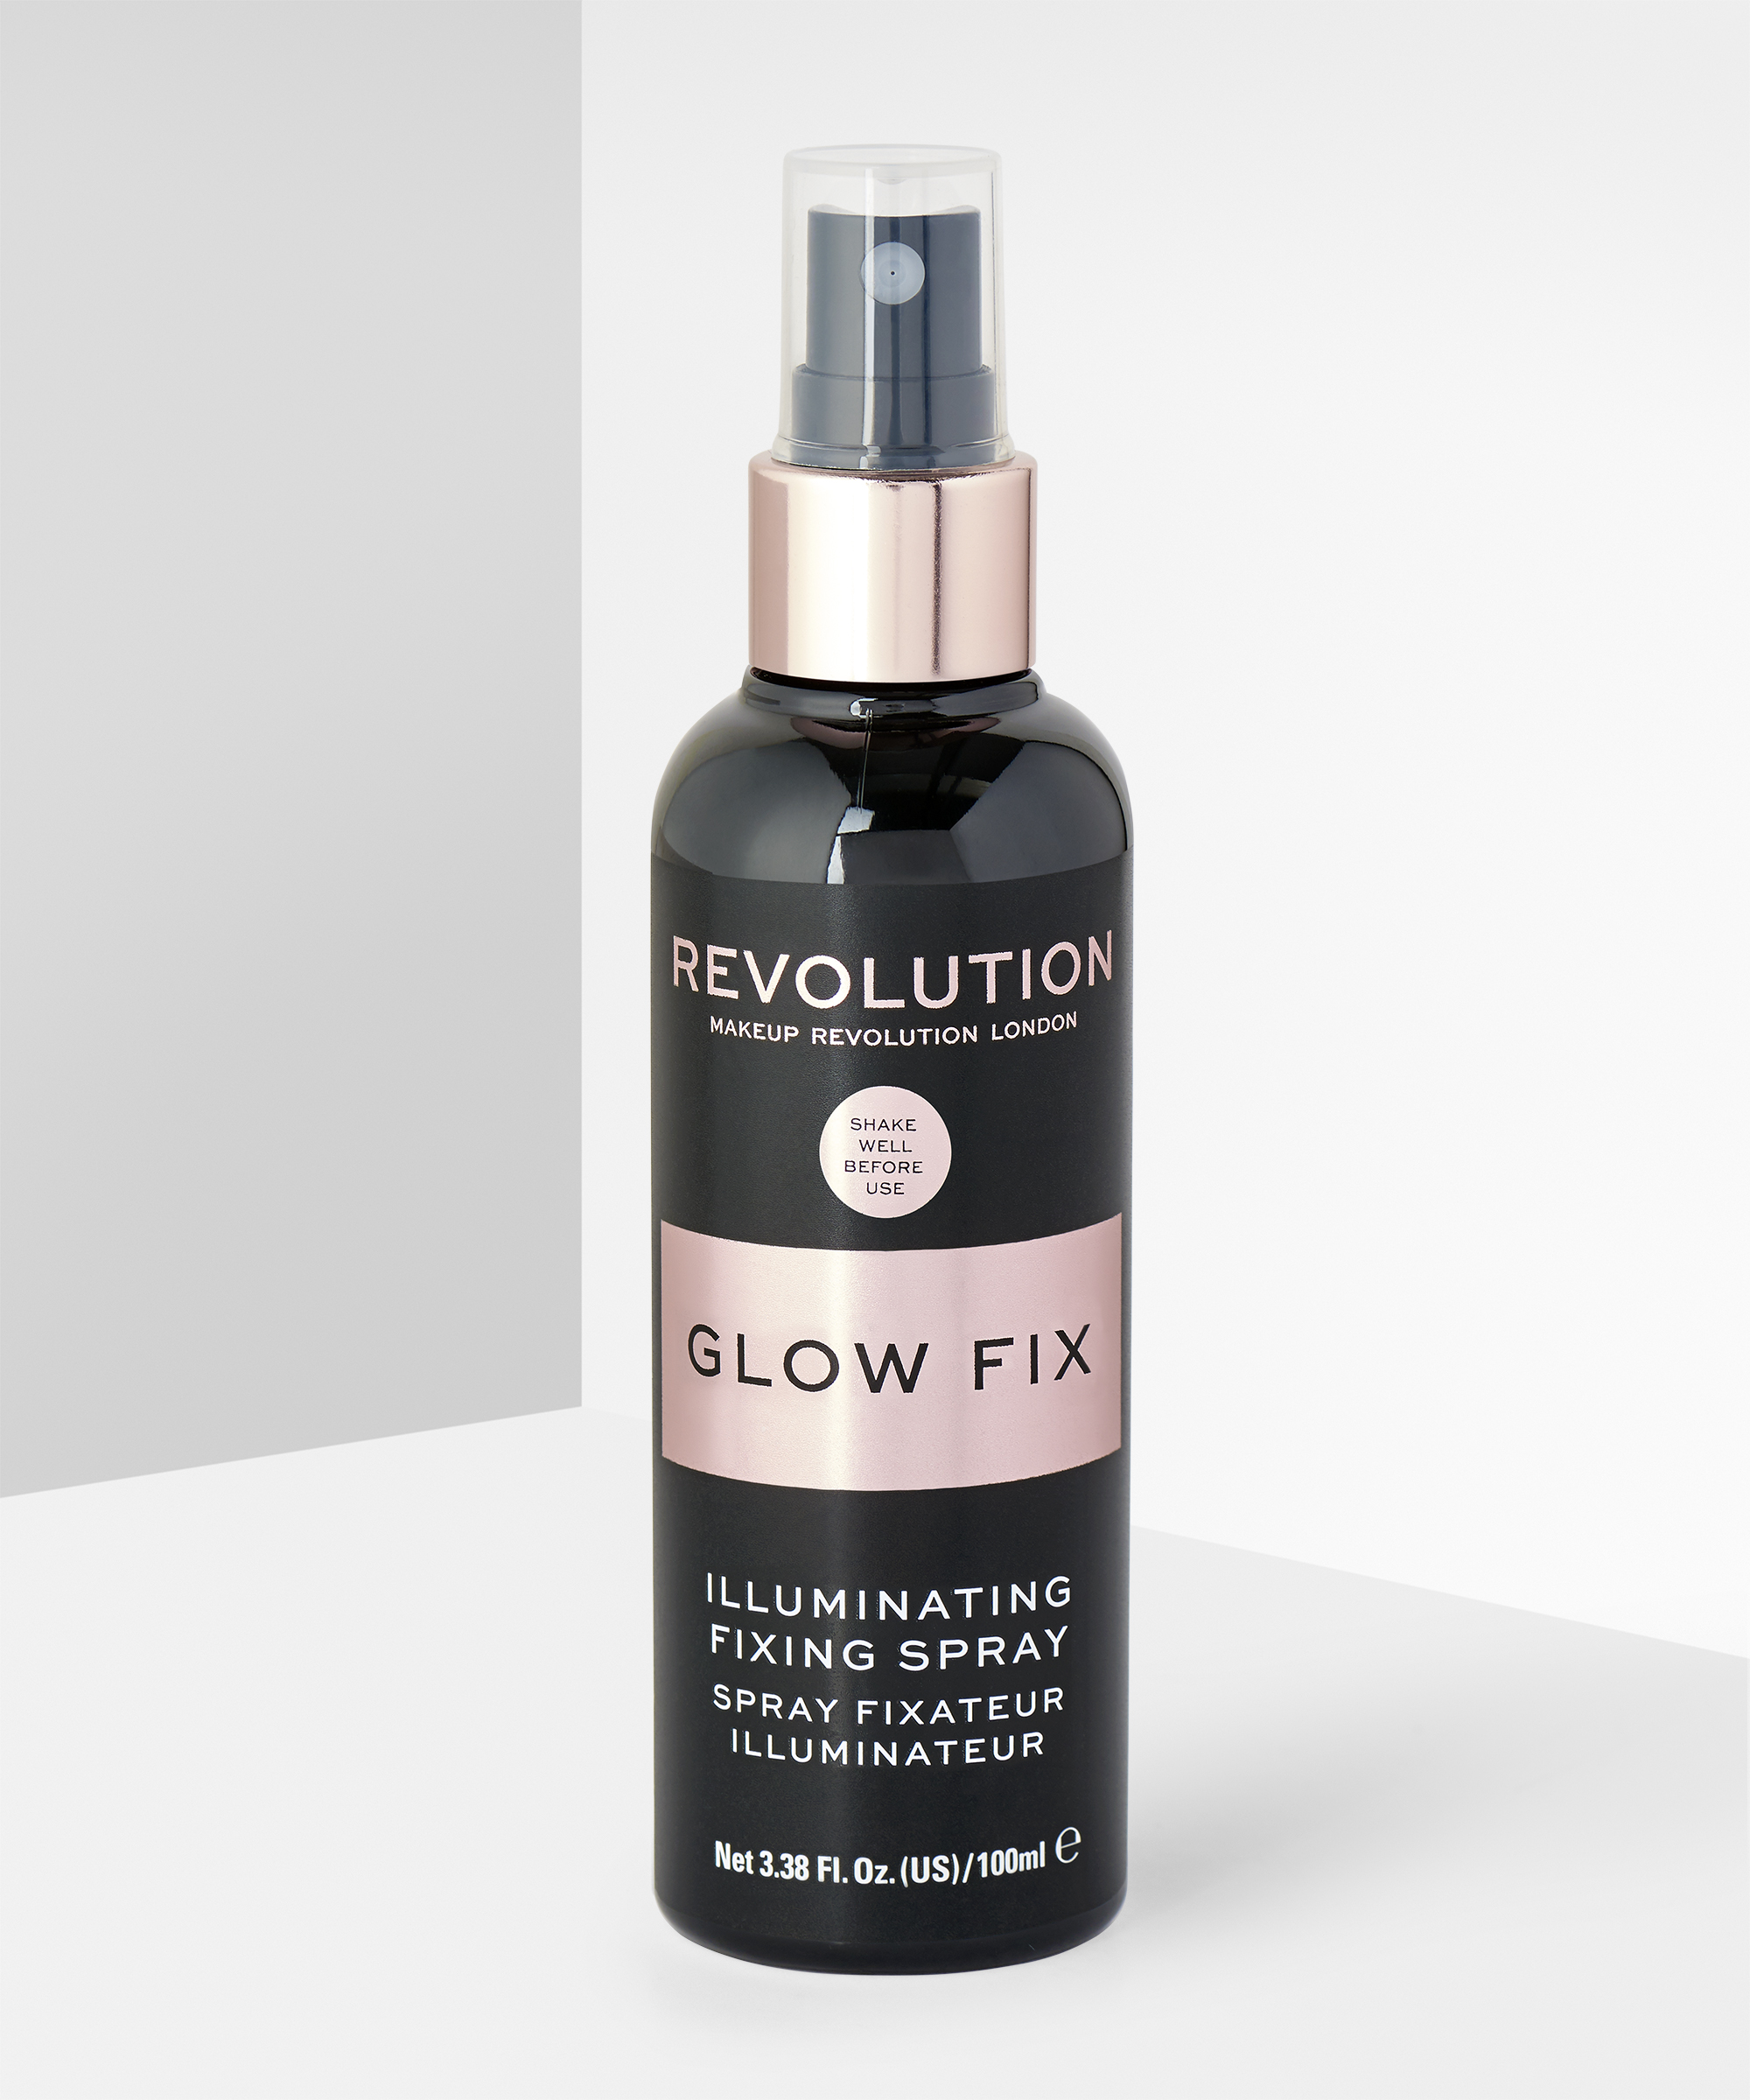 Makeup revolution glow fix illuminating fixing spray for long lasting makeup.